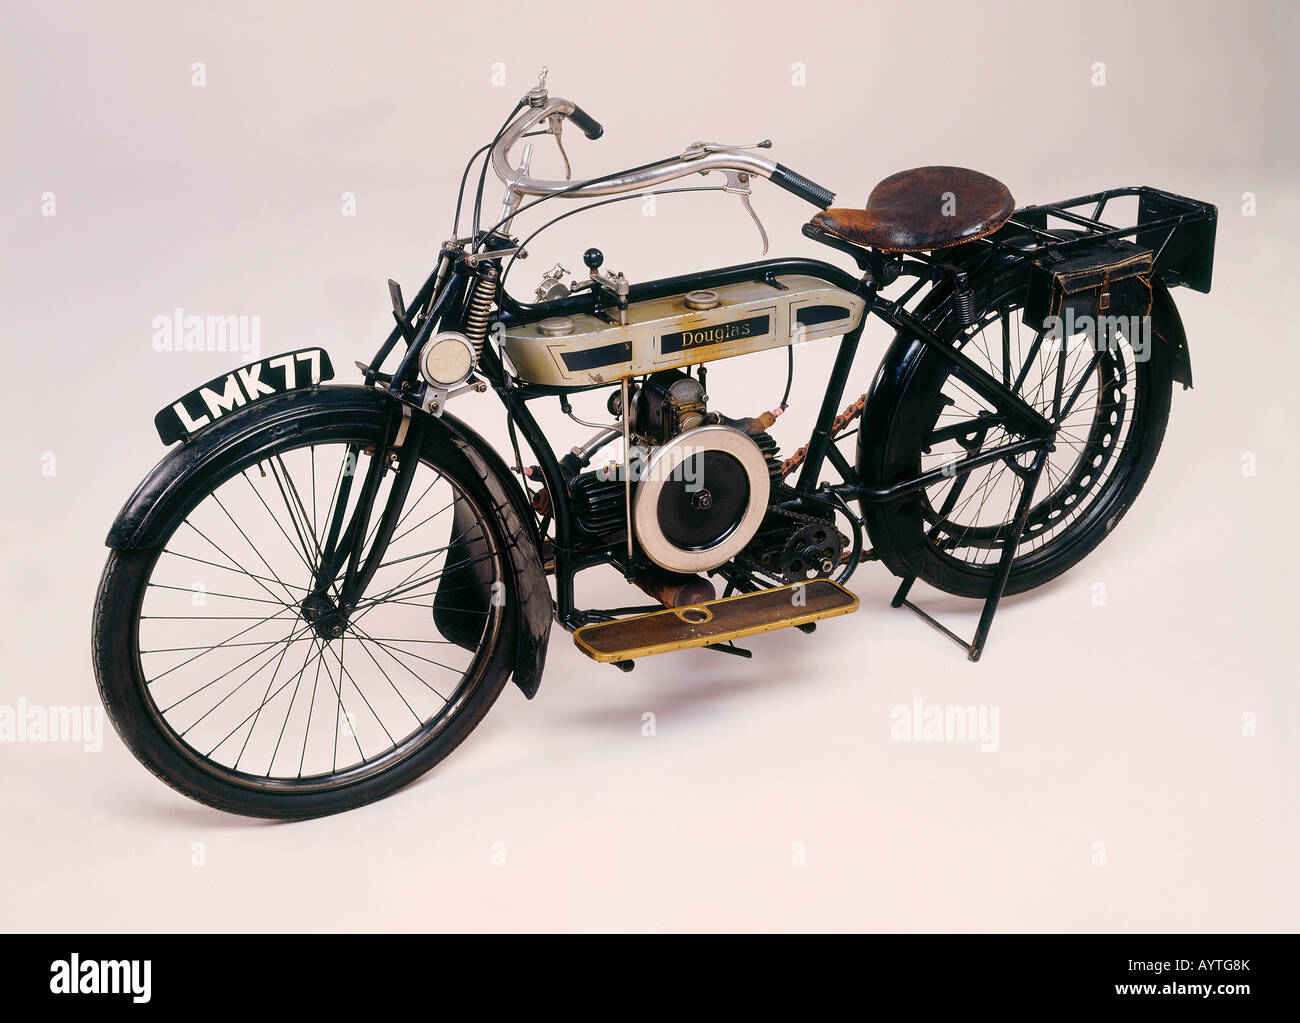 1913 Douglas motocicleta Foto de stock